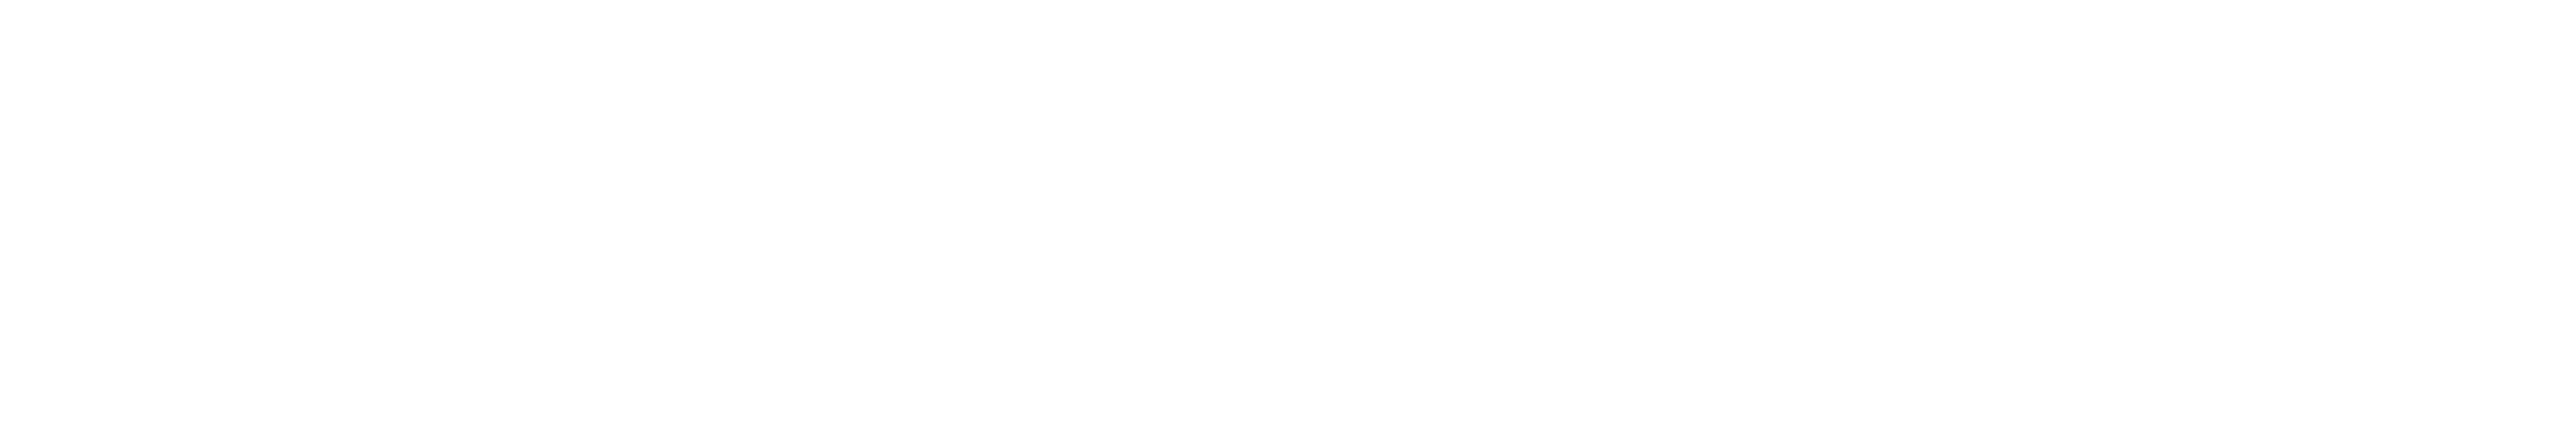 Flow4grow Logo white